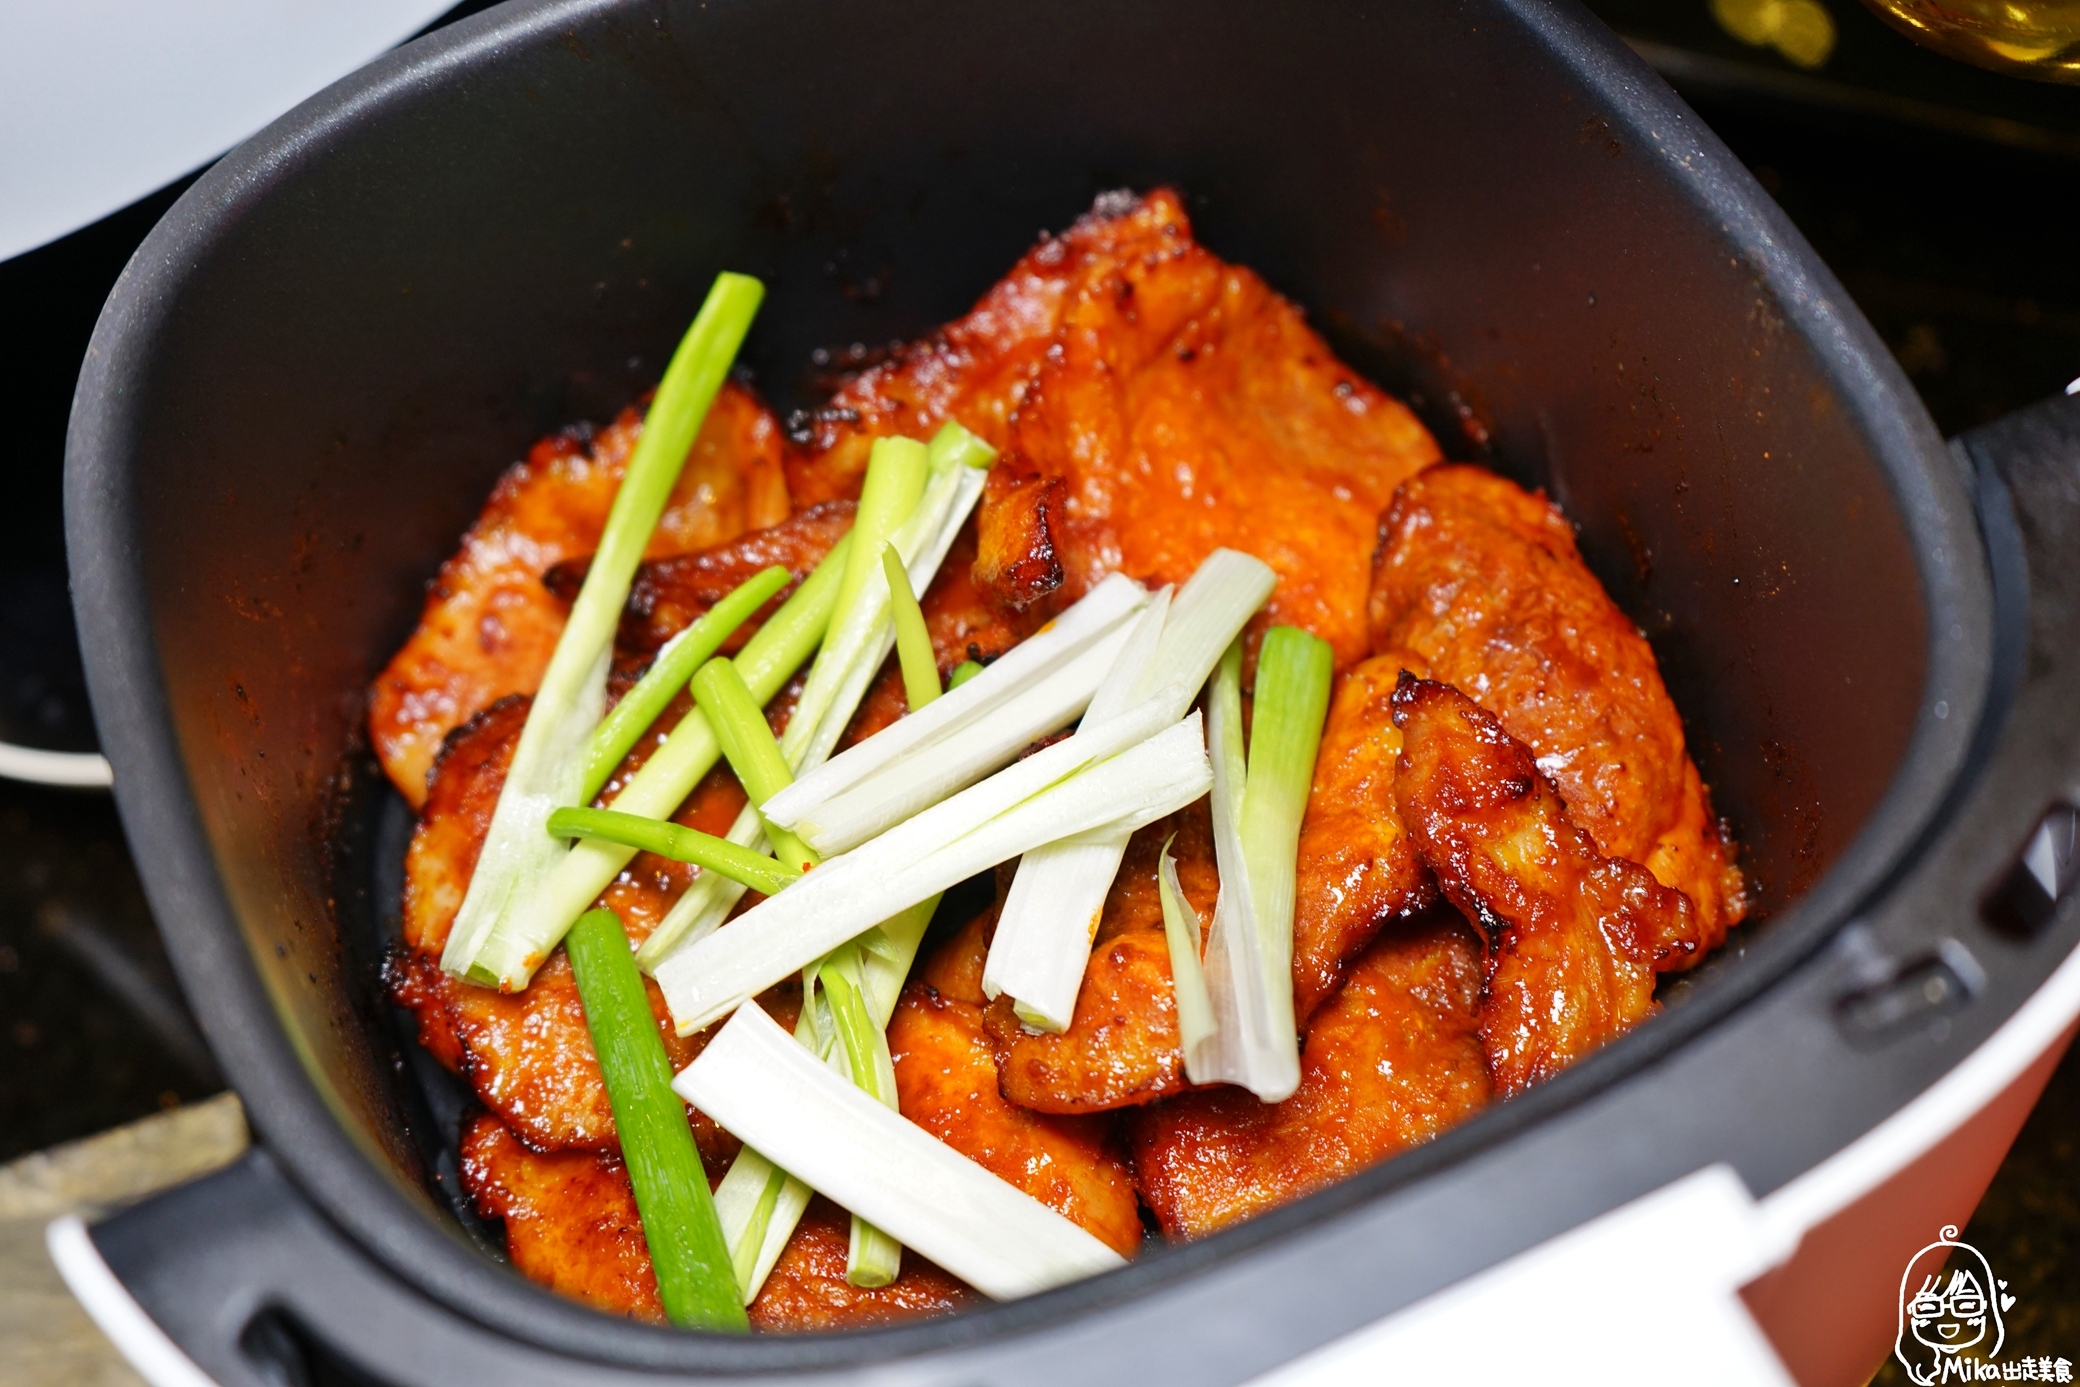 『懶人。料理』  辣醬里肌｜芷要上菜  氣炸鍋出好料  韓式辣醬重口味  可包生菜吃最爽口   零失敗簡單料理系列。